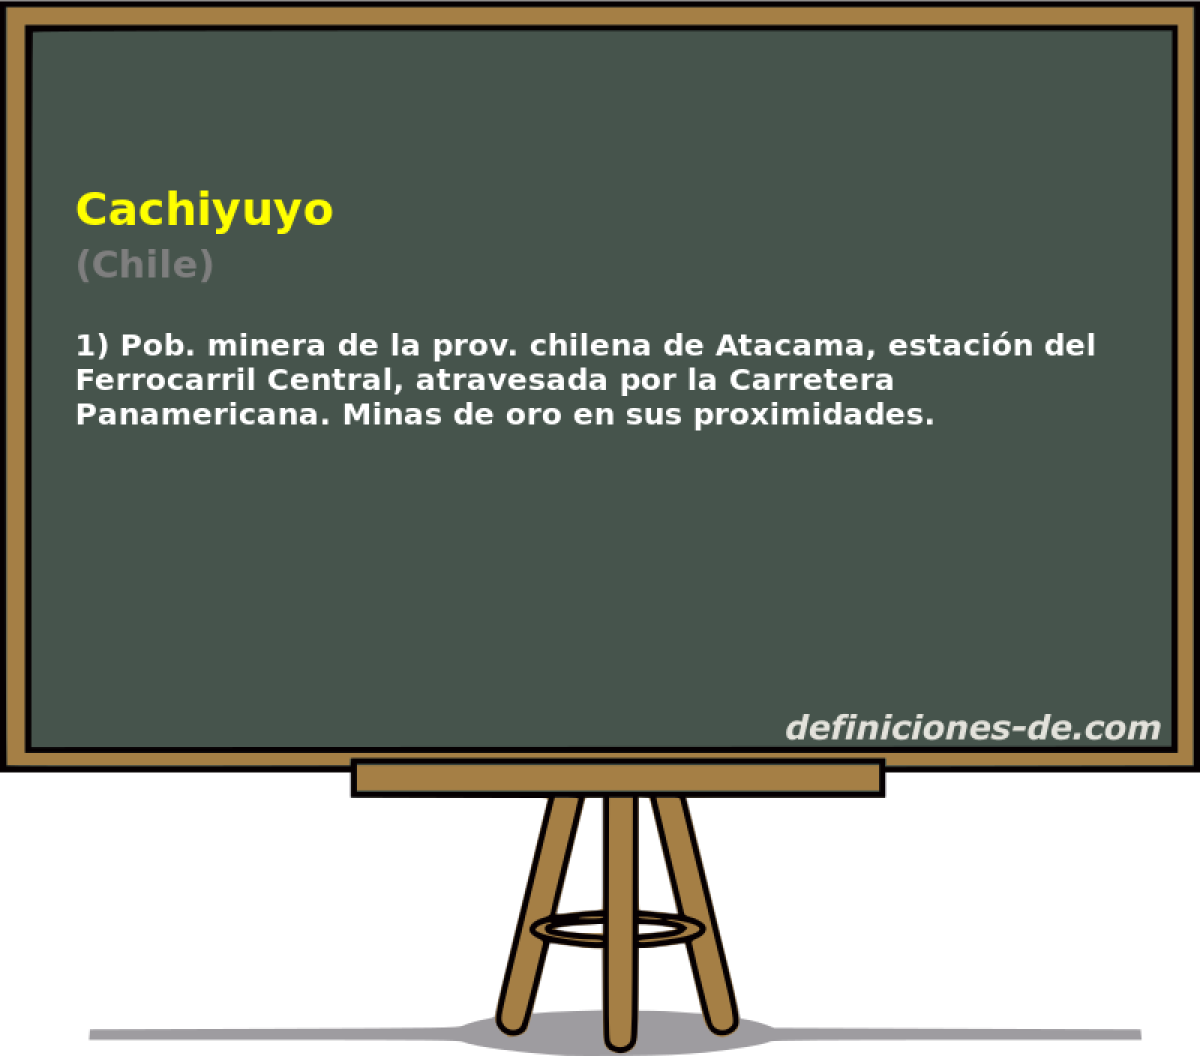 Cachiyuyo (Chile)